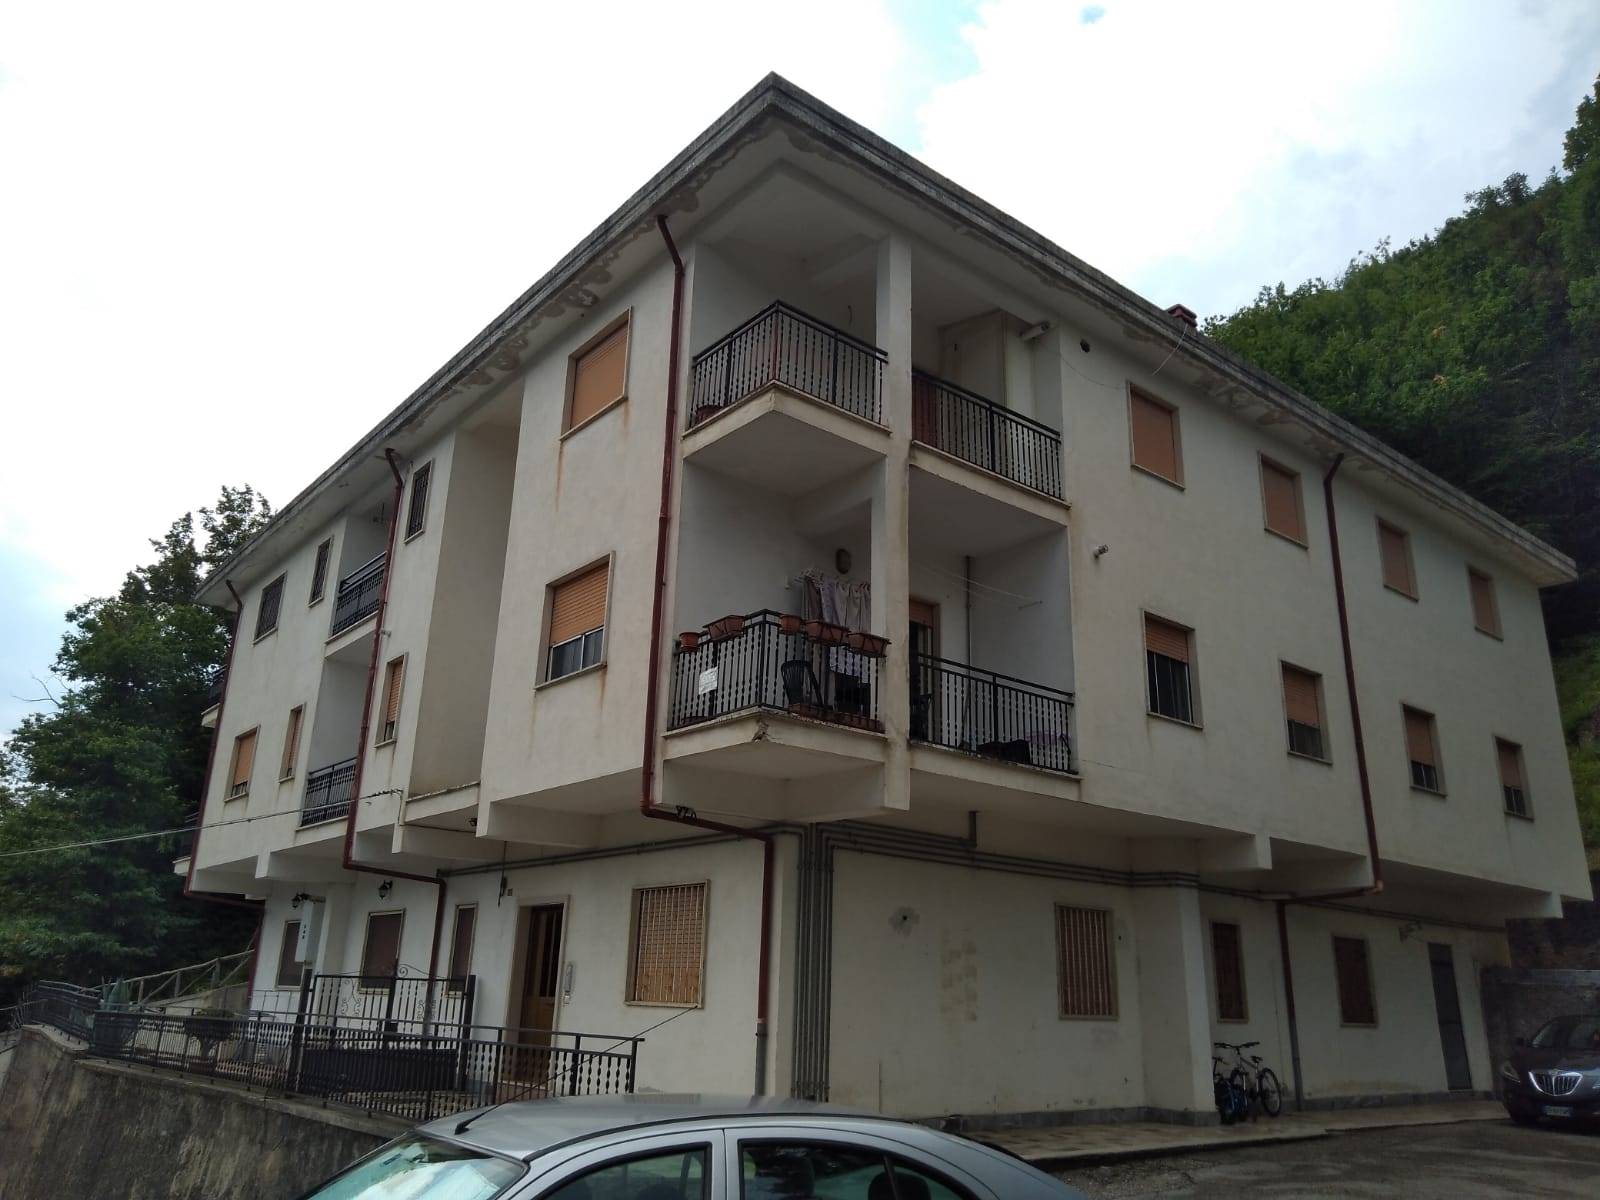 Appartamento in vendita a Civitella Roveto, 6 locali, prezzo € 117.000 | PortaleAgenzieImmobiliari.it